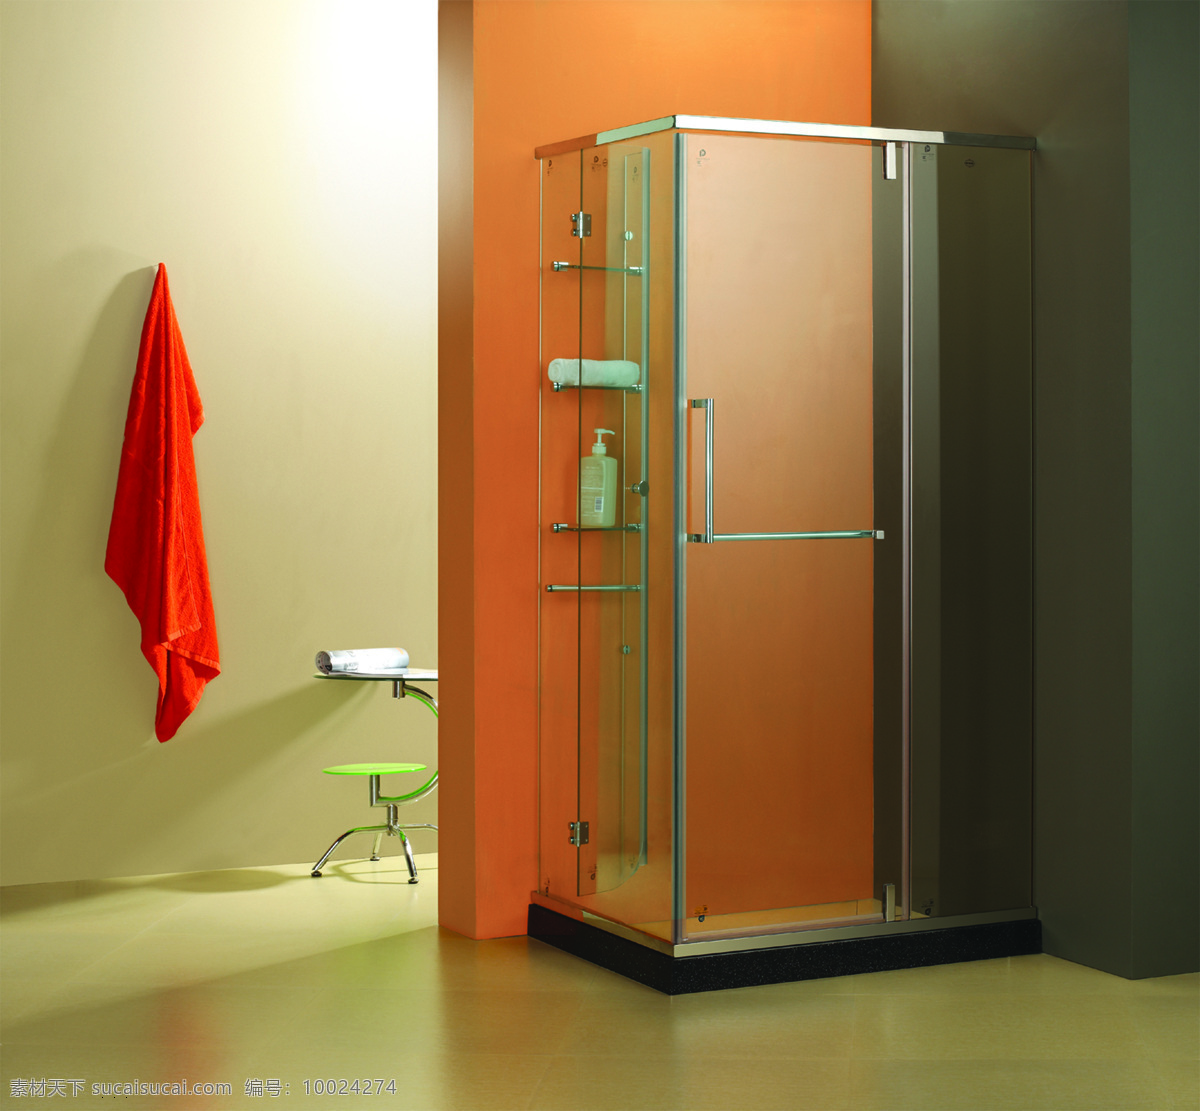 卫浴免费下载 建筑园林 空间 淋浴房 室内摄影 卫浴 德宁 家居装饰素材 室内设计